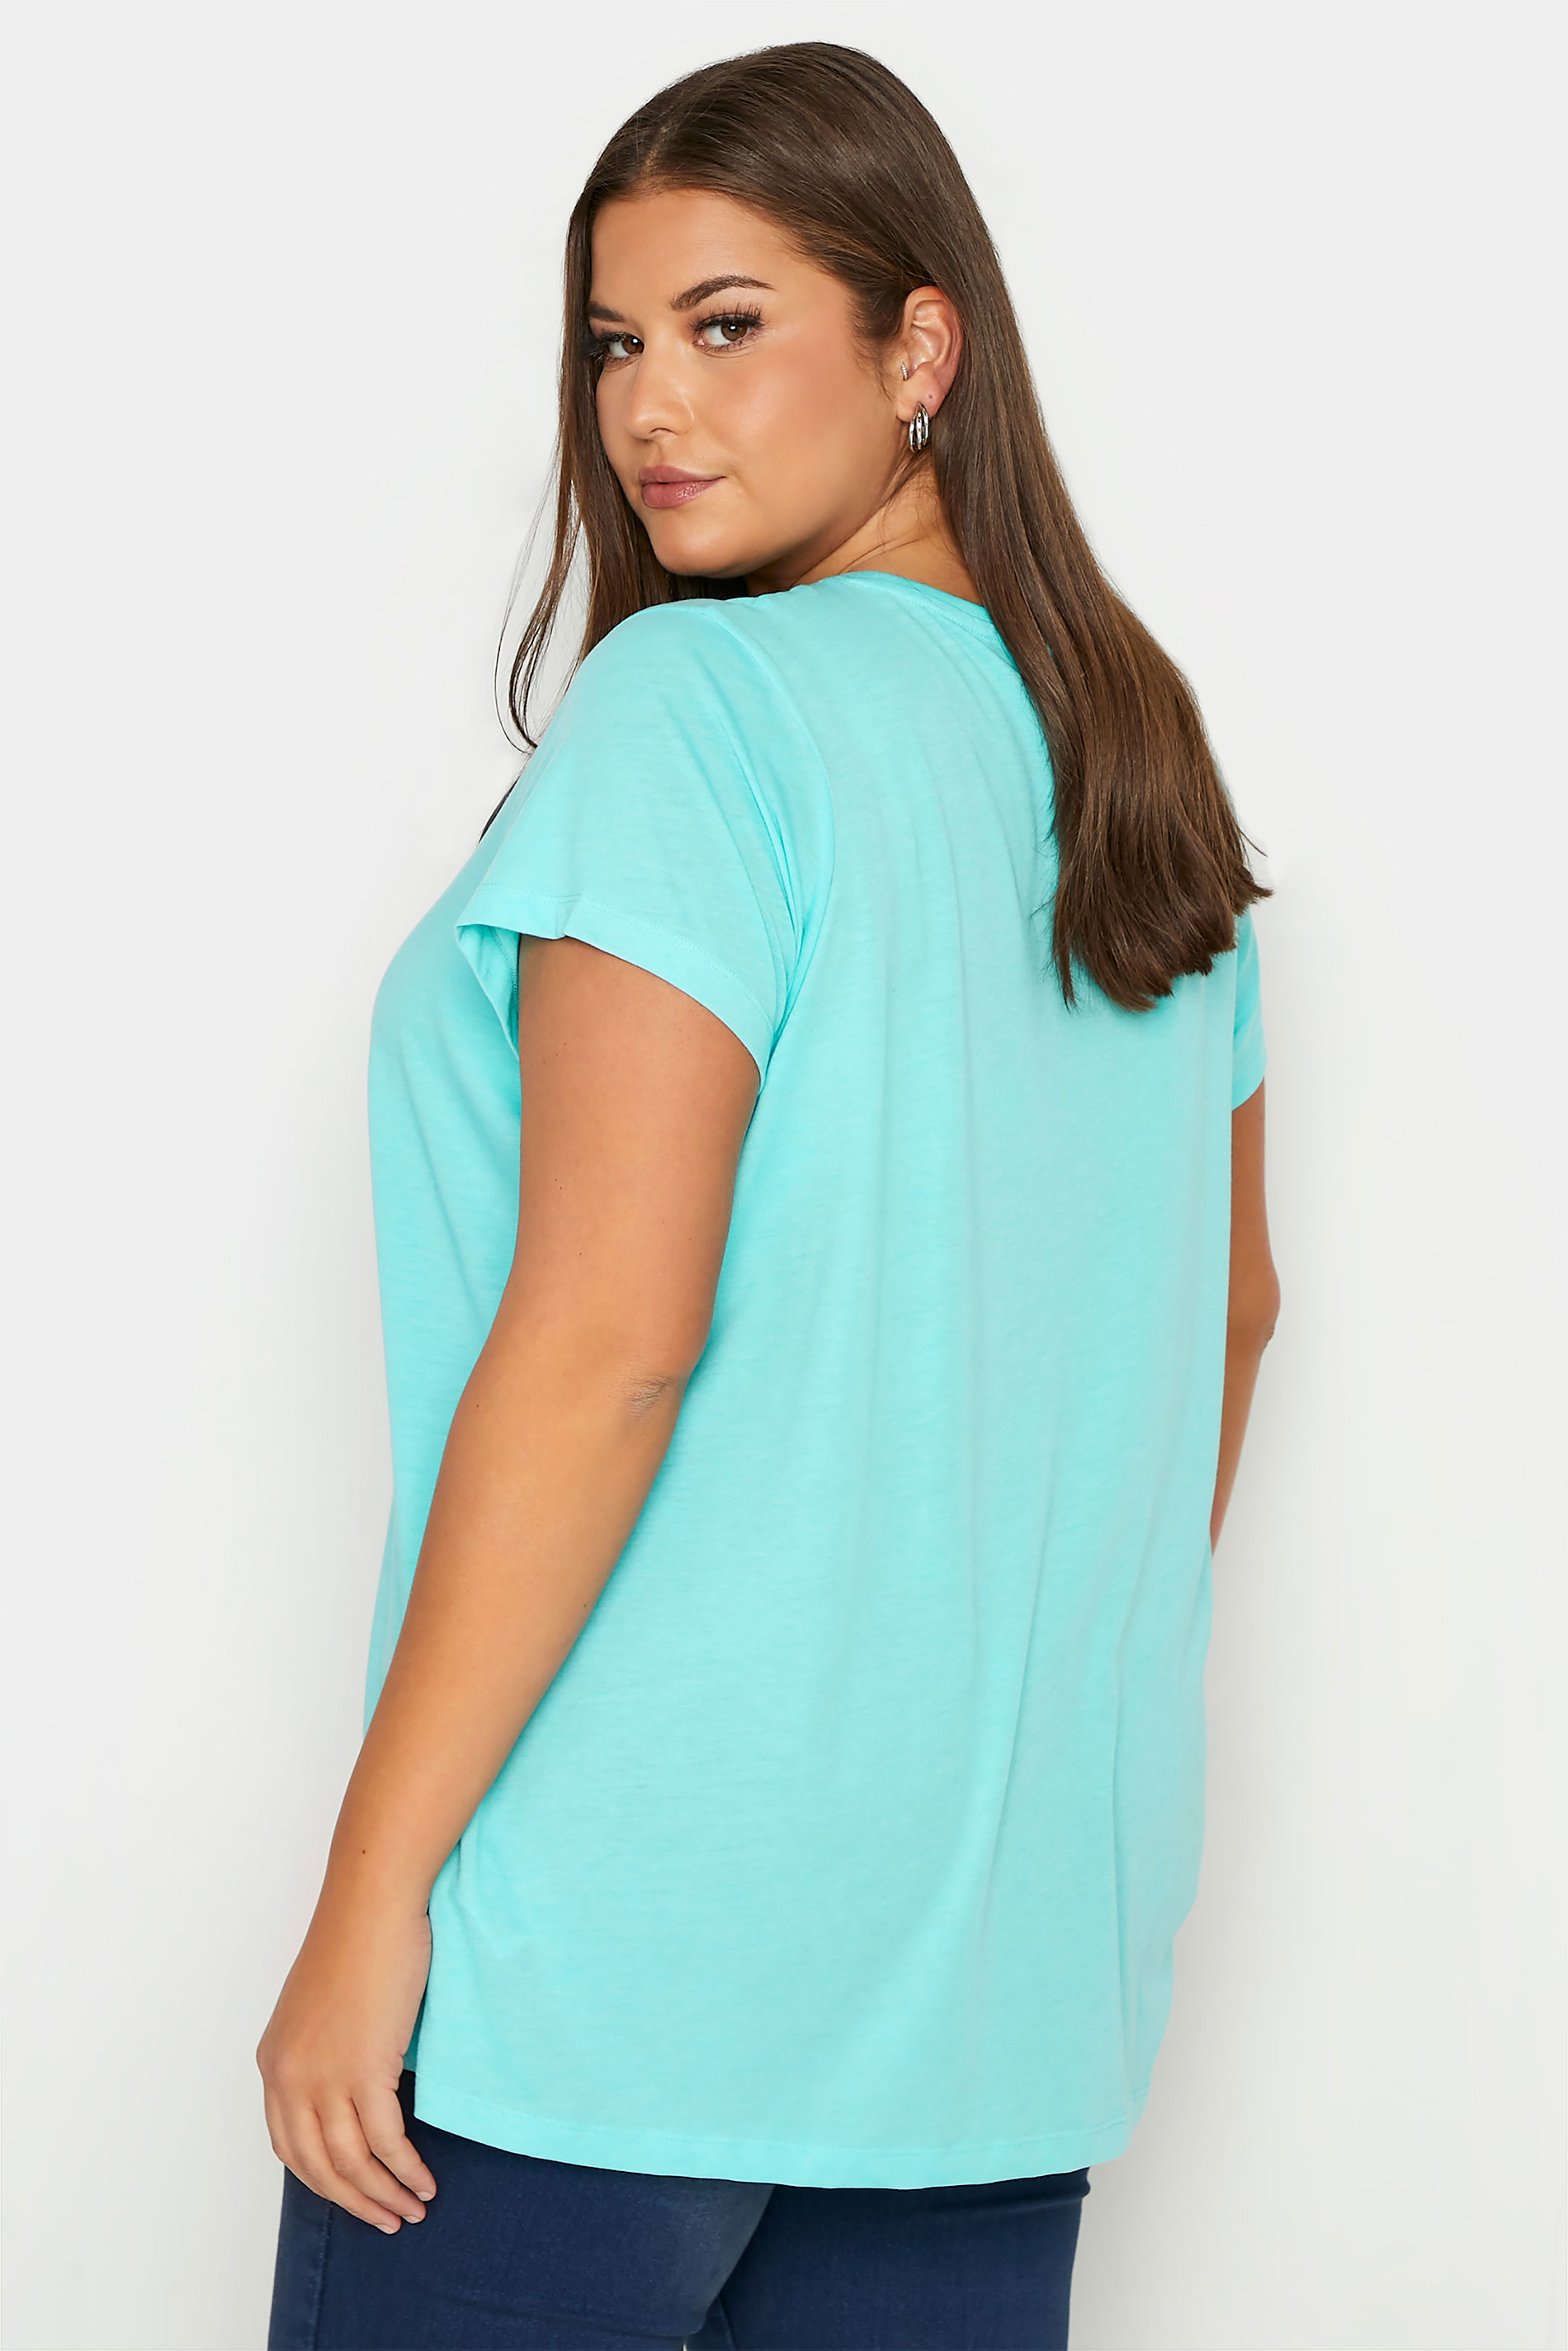 Grande taille  Tops Grande taille  T-Shirts Basiques & Débardeurs | T-Shirt Bleu Clair en Jersey - HZ05473